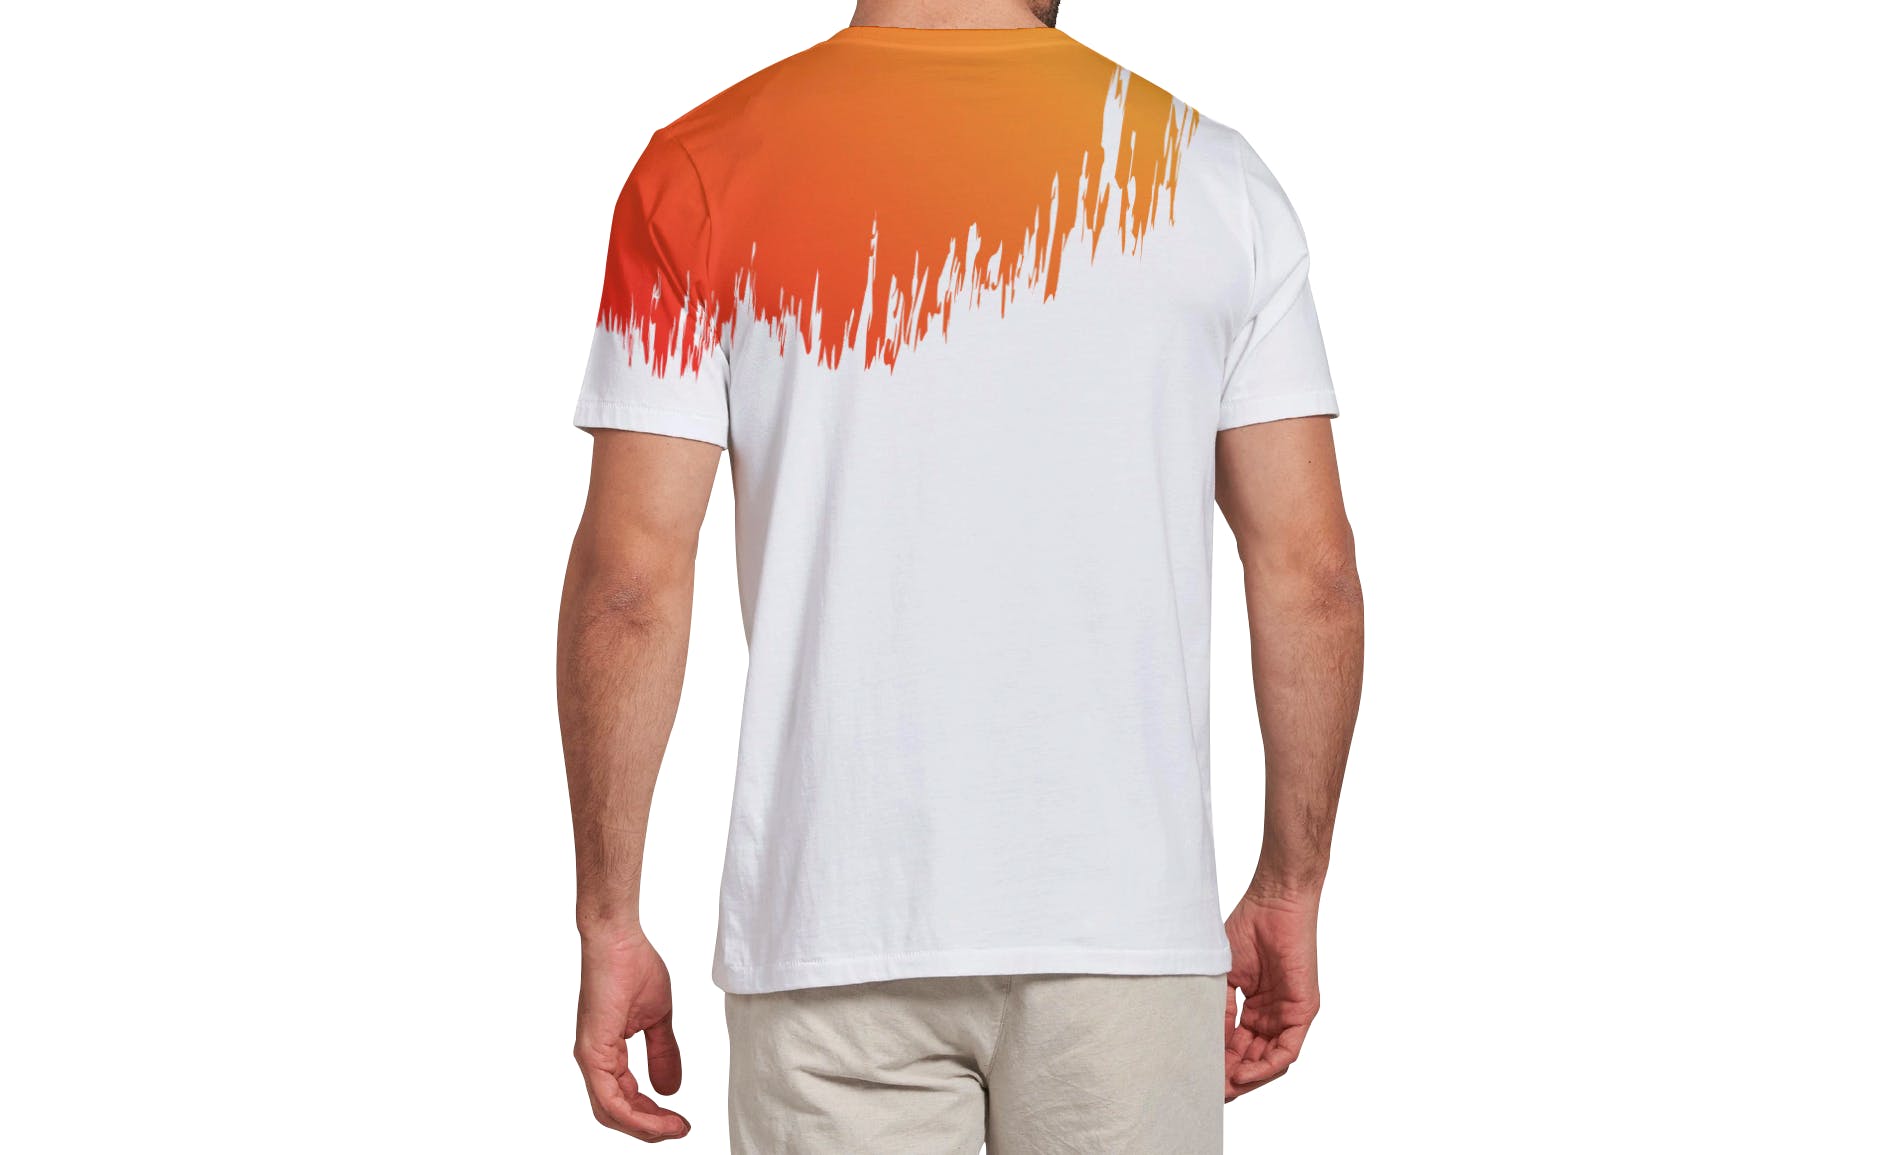 男士T恤印花设计效果图样机大洋岛精选v03 T-shirt Mockup Vol 03插图13